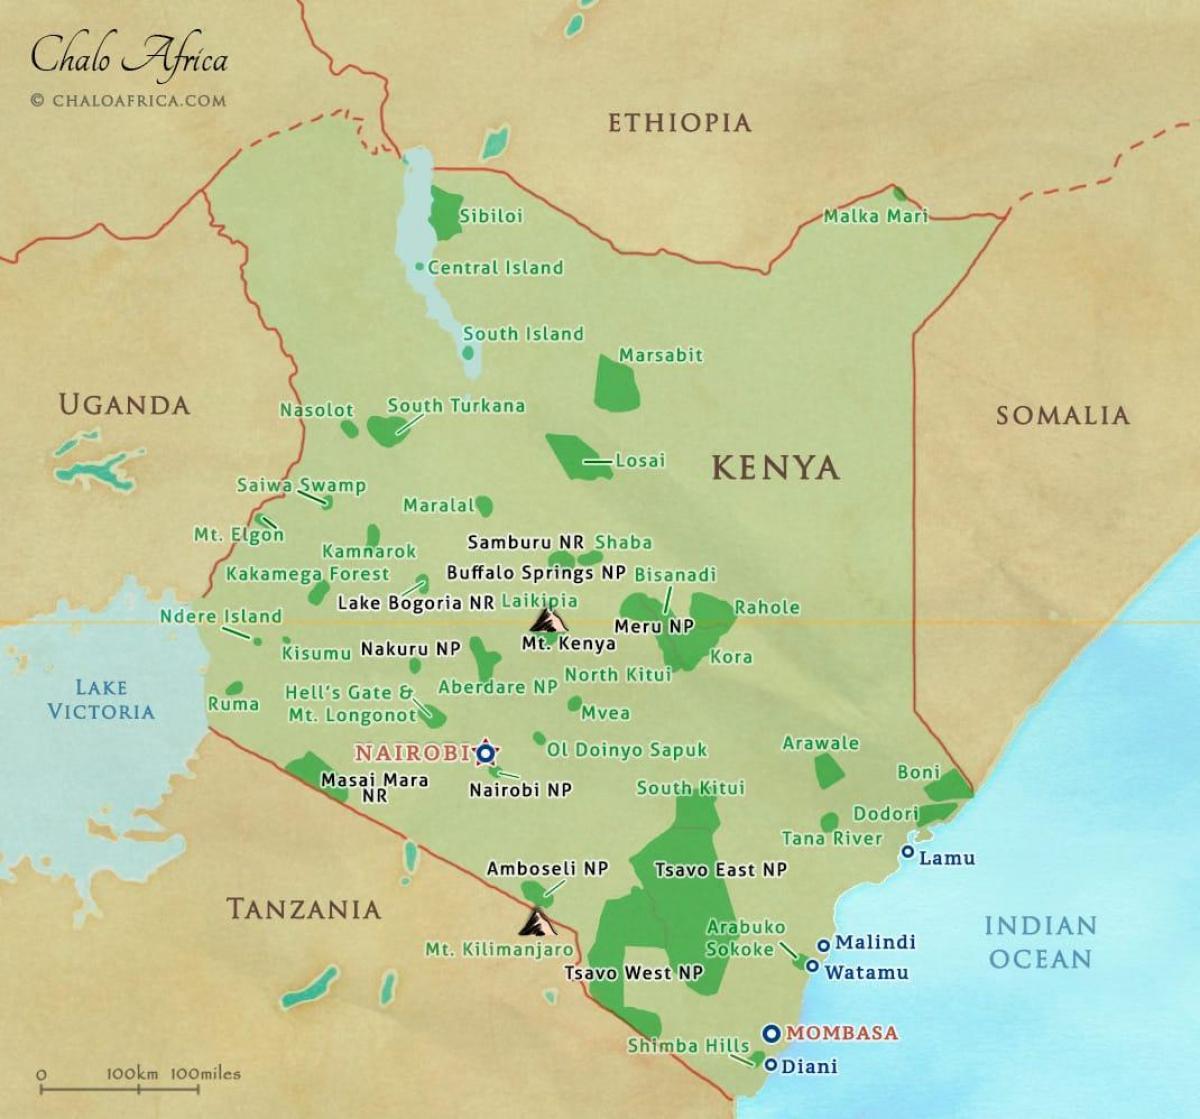 Kenya national parks map - Karte von Kenia Nationalparks und